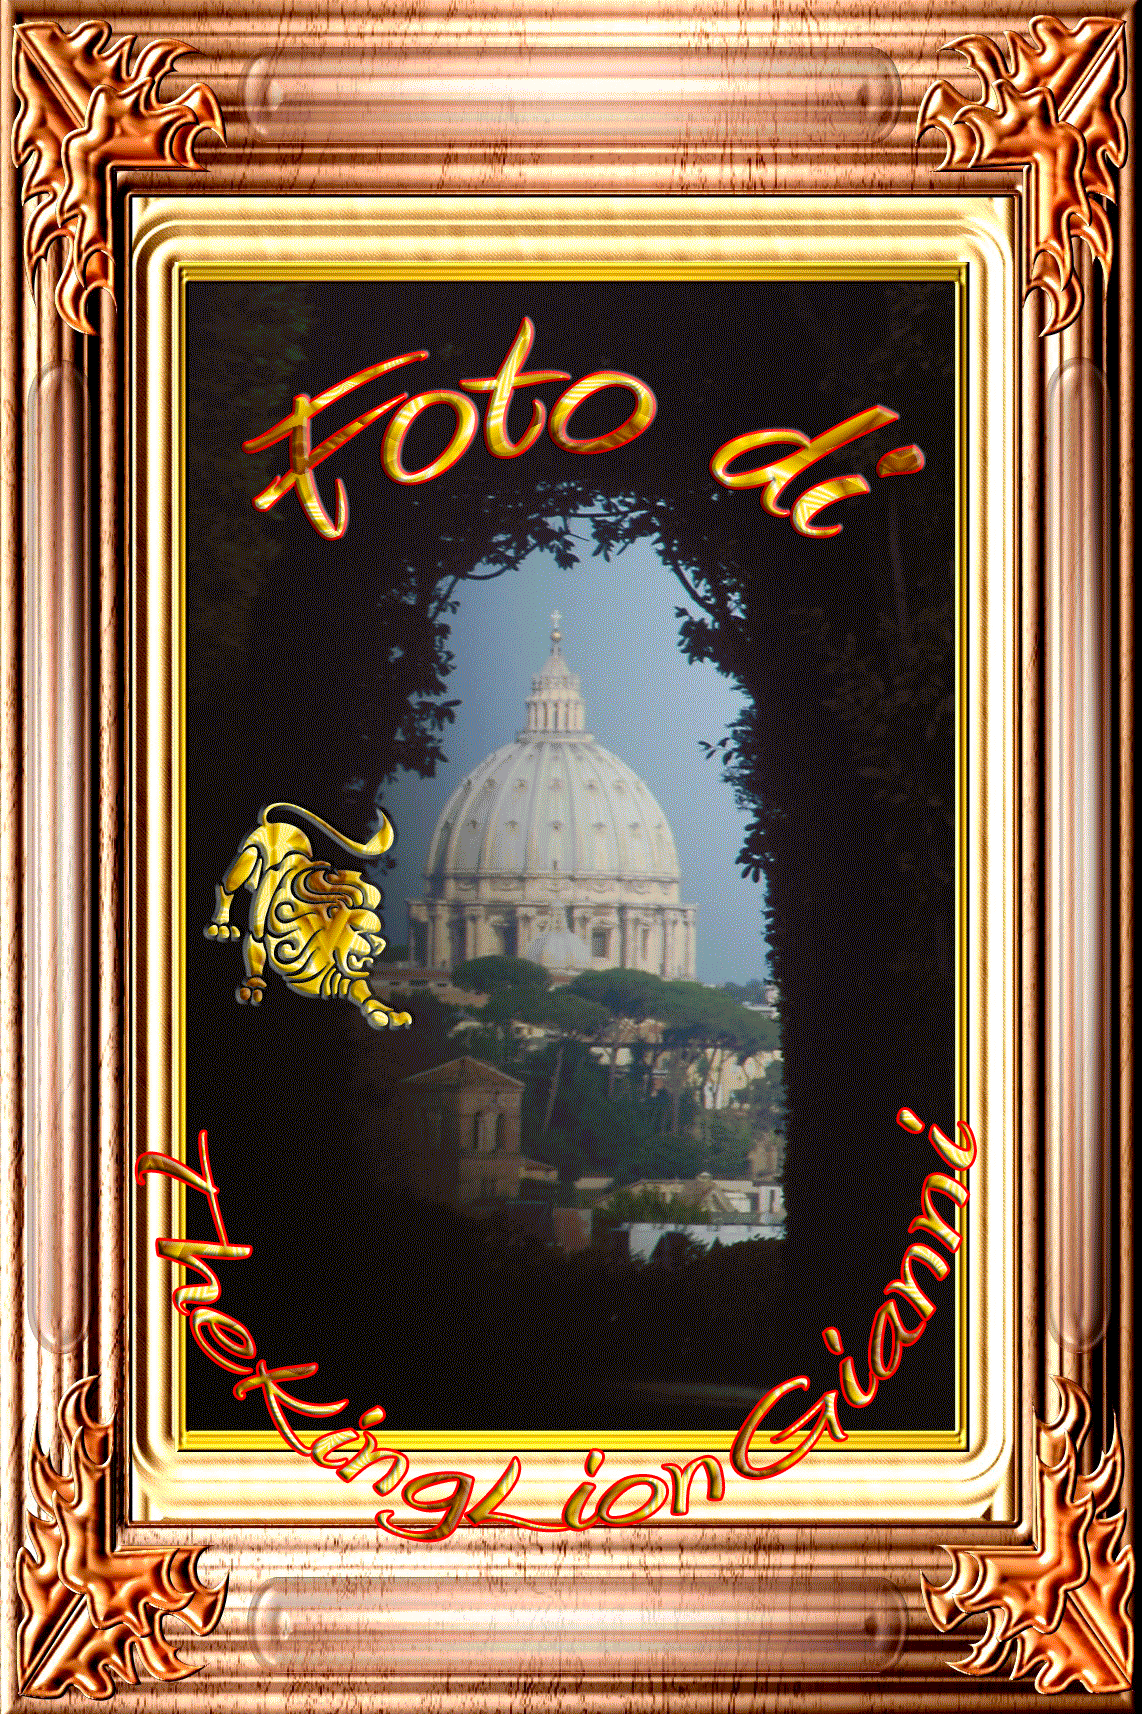 http://digilander.libero.it/thekingliongianni61/Novembre%202008/Vaticano.gif